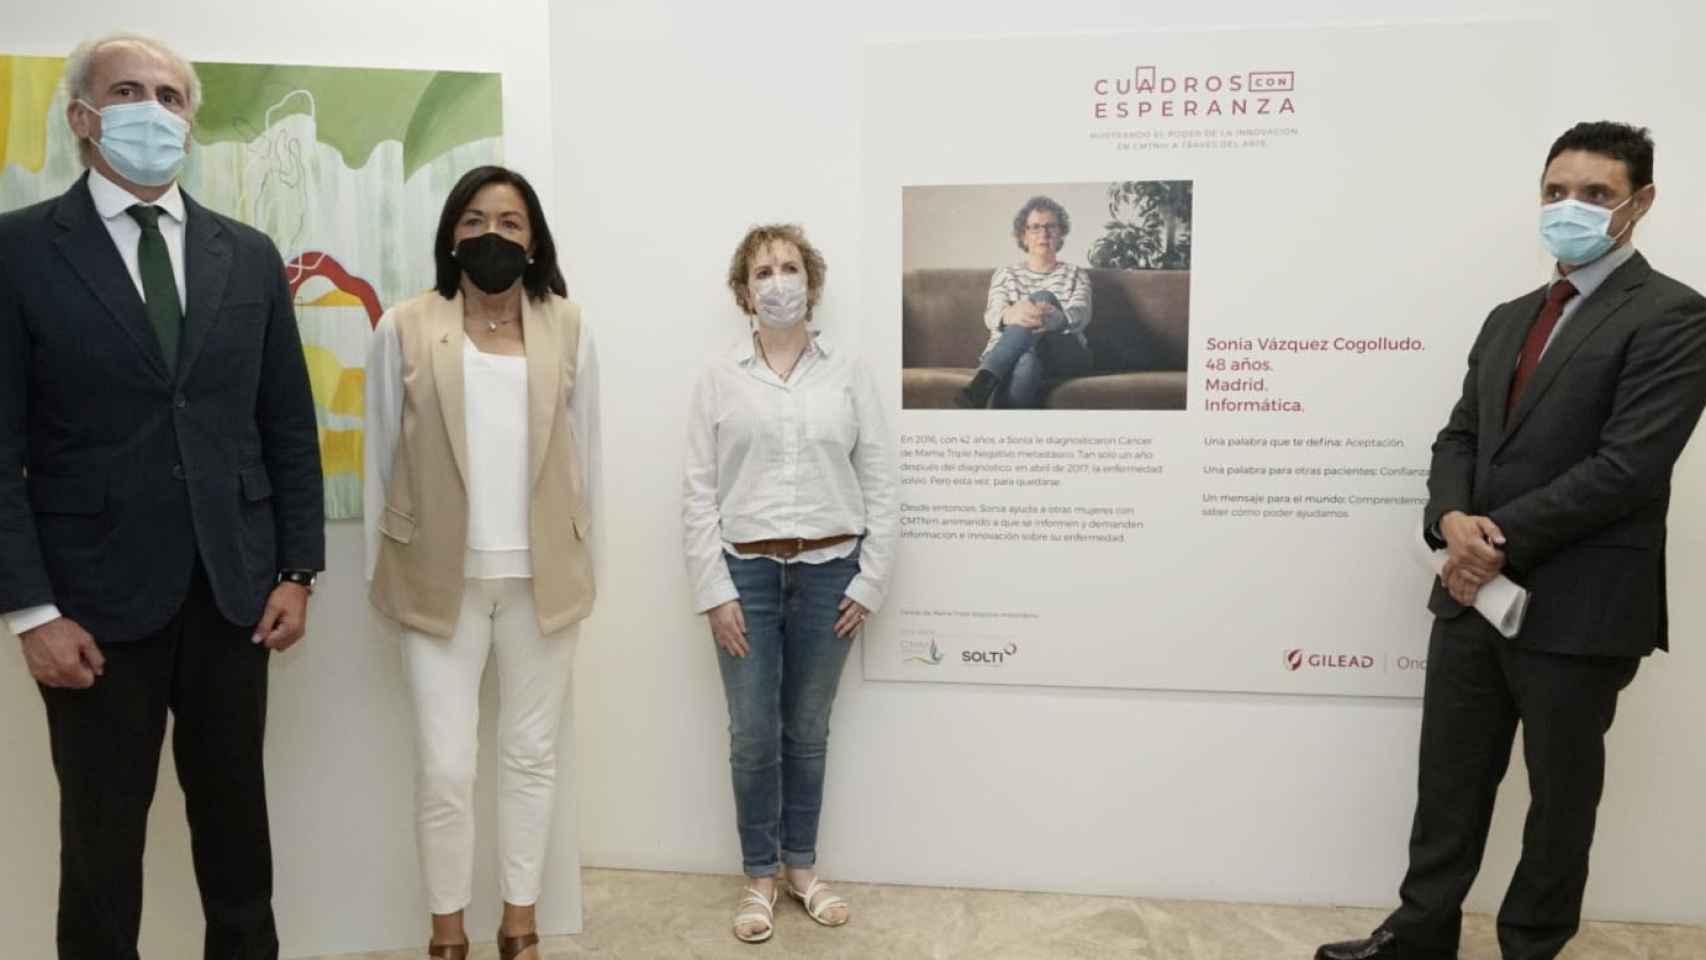 La exposición ‘Cuadros con Esperanza’, que conciencia sobre el cáncer de mama, ha sido inaugurada en el Hospital Clínico San Carlos de Madrid / SERVIMEDIA